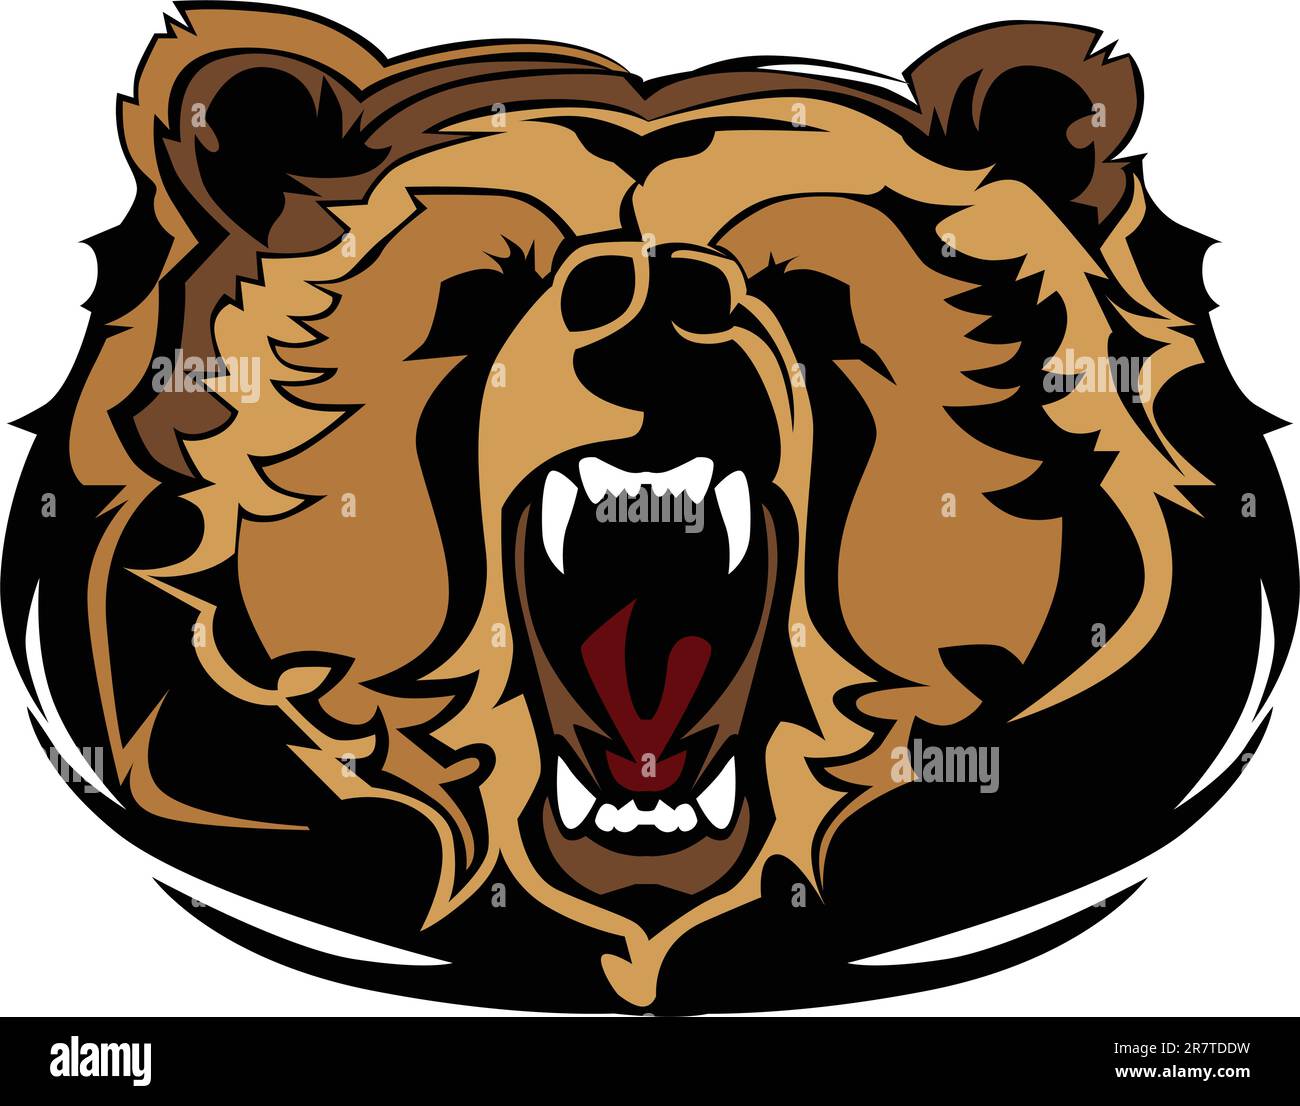 Immagine vettoriale grafica della mascotte della testa dell'orso Growing Illustrazione Vettoriale